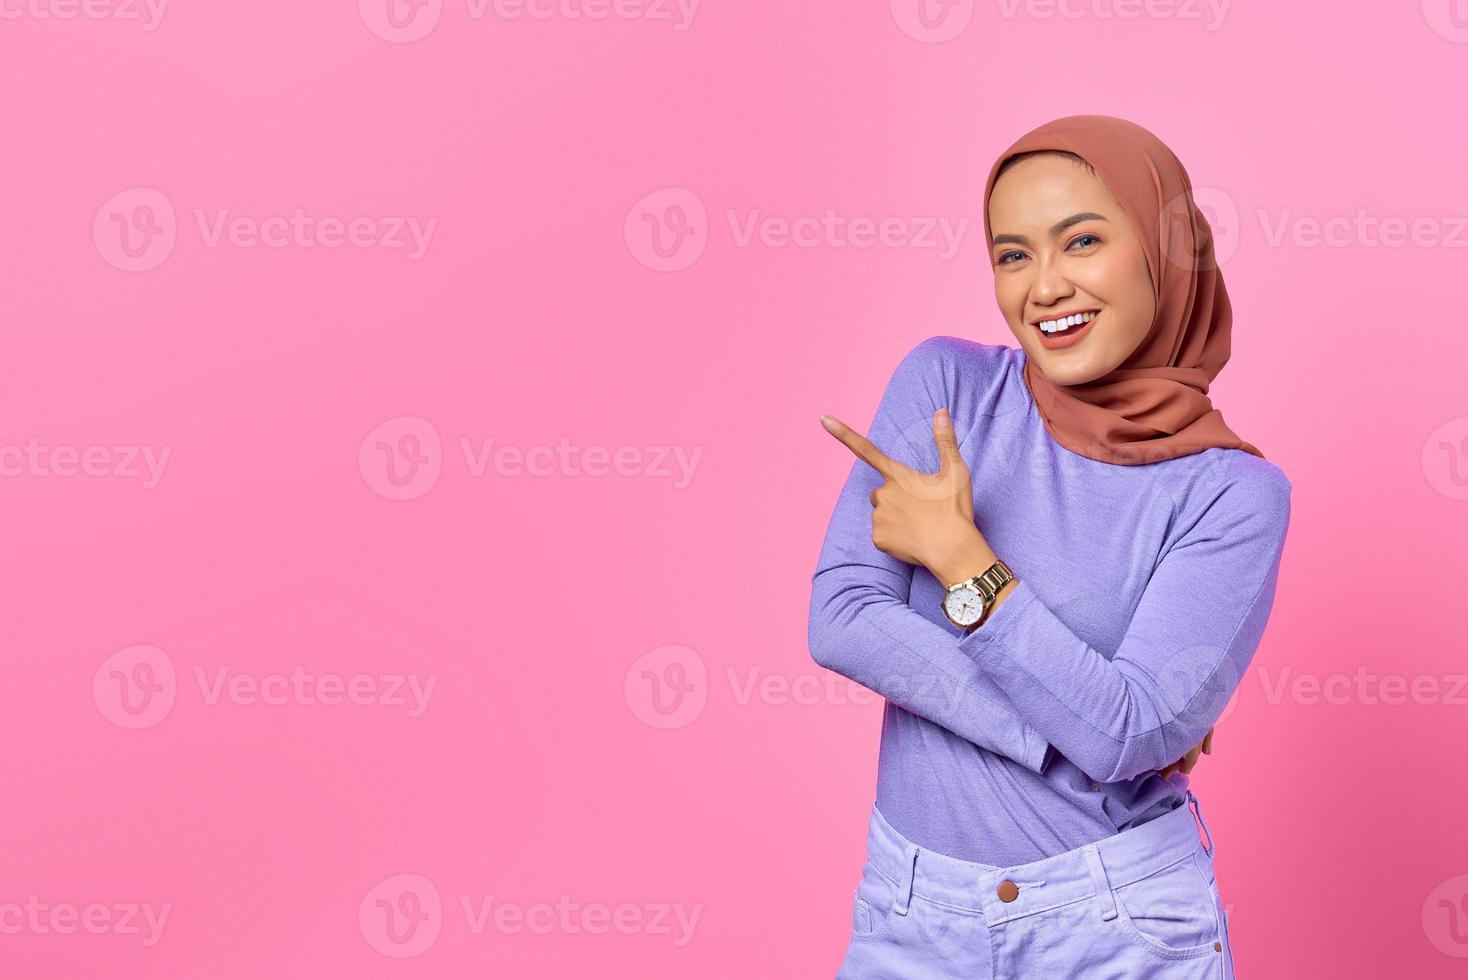 retrato, de, sonriente, joven, mujer asiática, señalar con el dedo, en, espacio de la copia, en, fondo rosa foto